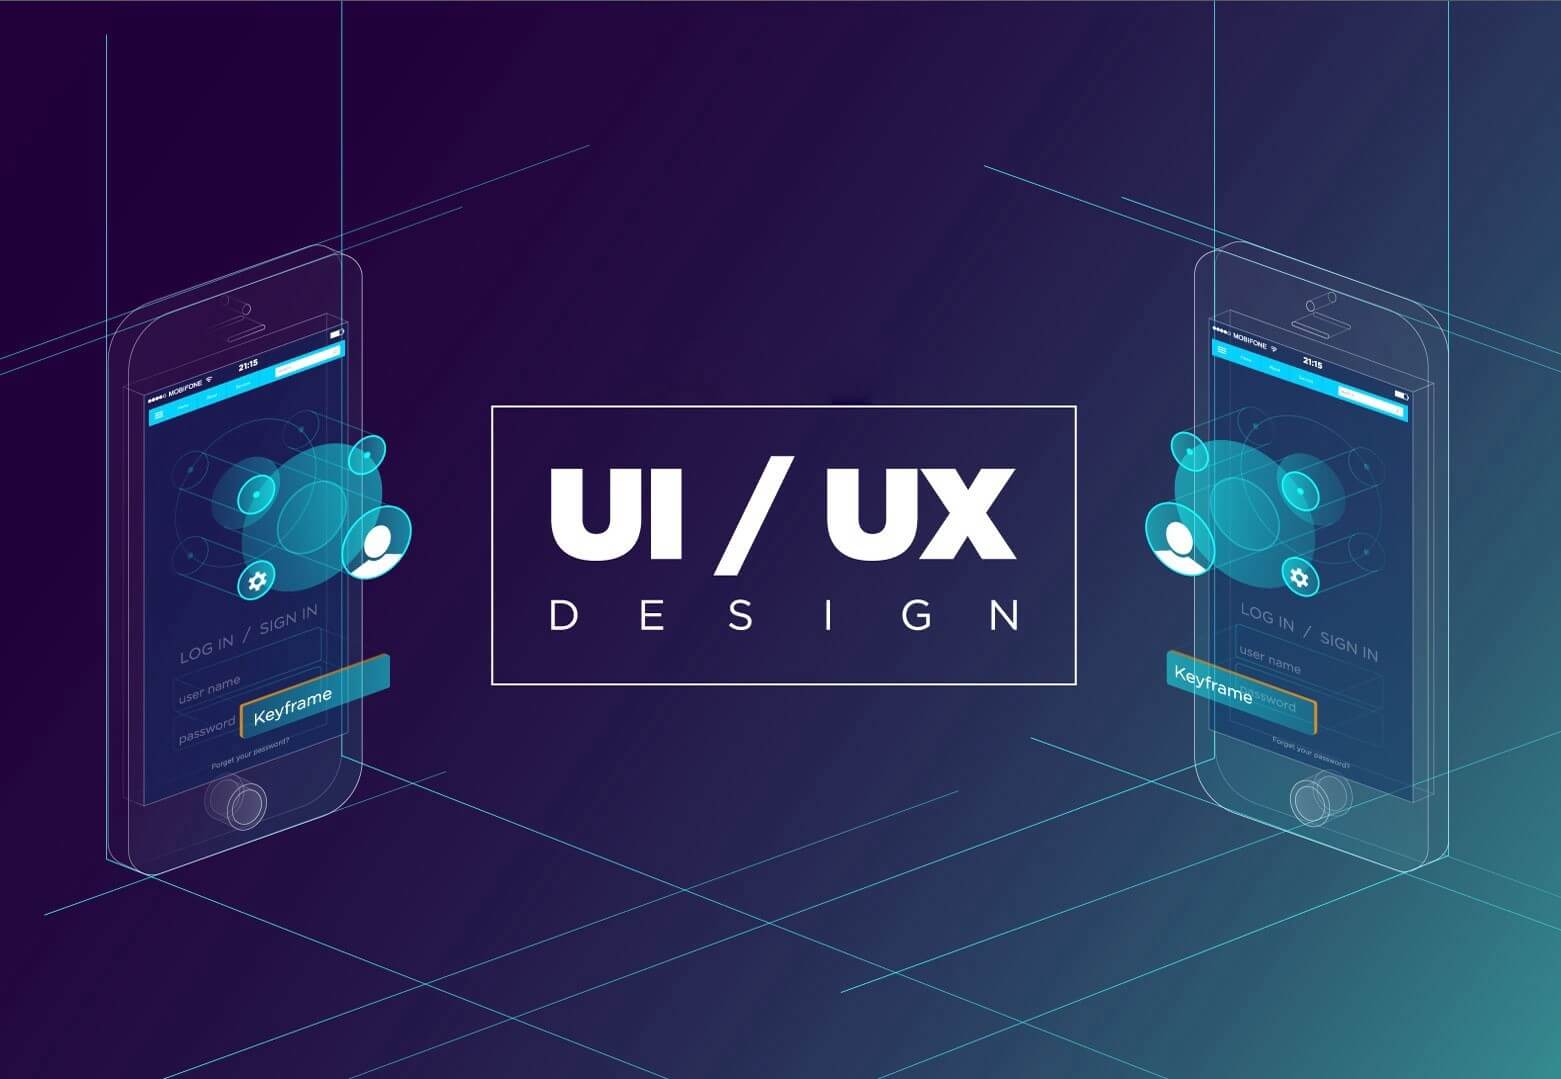 UI UX là gì? Giải thích đơn giản cho người mới bắt đầu